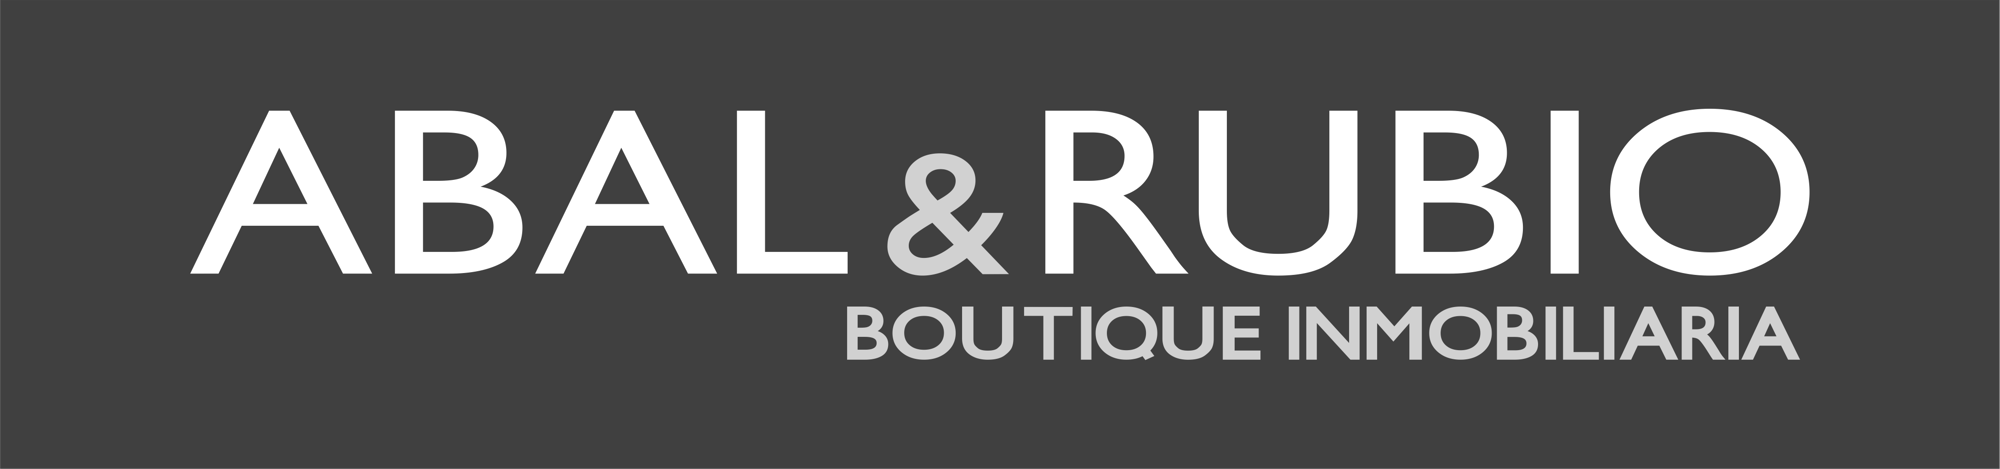 Logo inmobiliaria Abal & Rubio